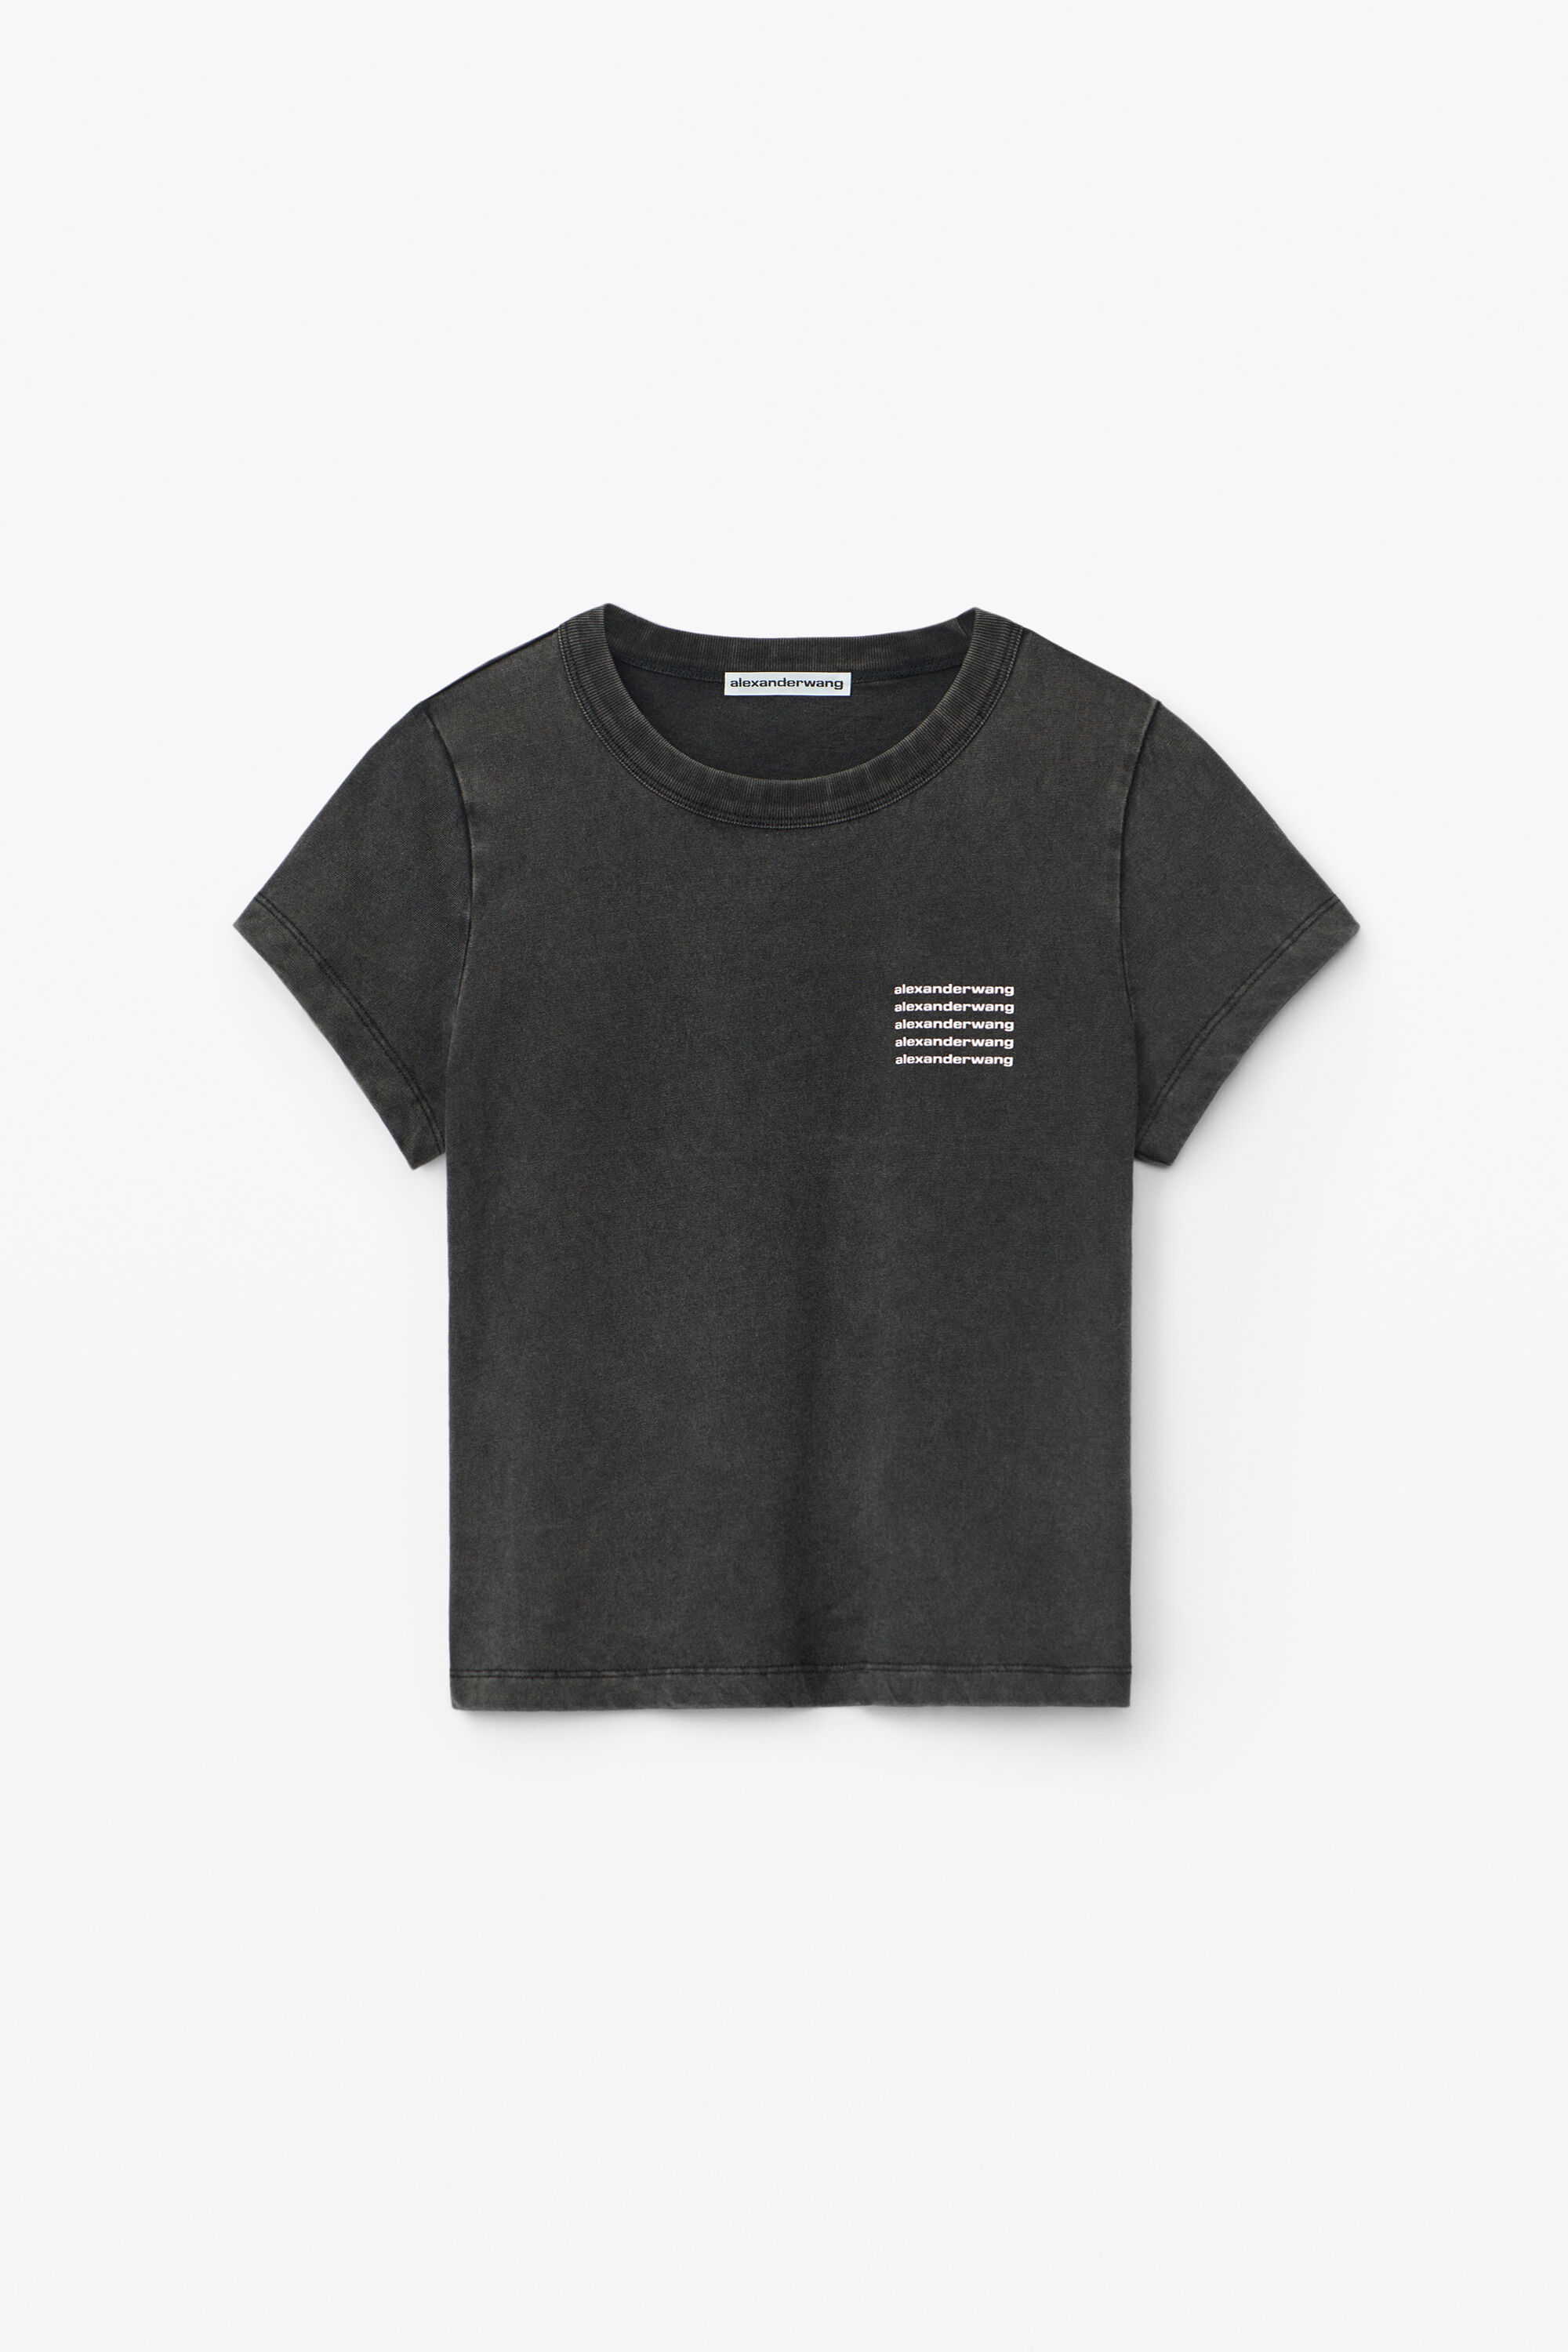 アレキサンダーワン S Tシャツ アシッド - Tシャツ/カットソー(半袖/袖